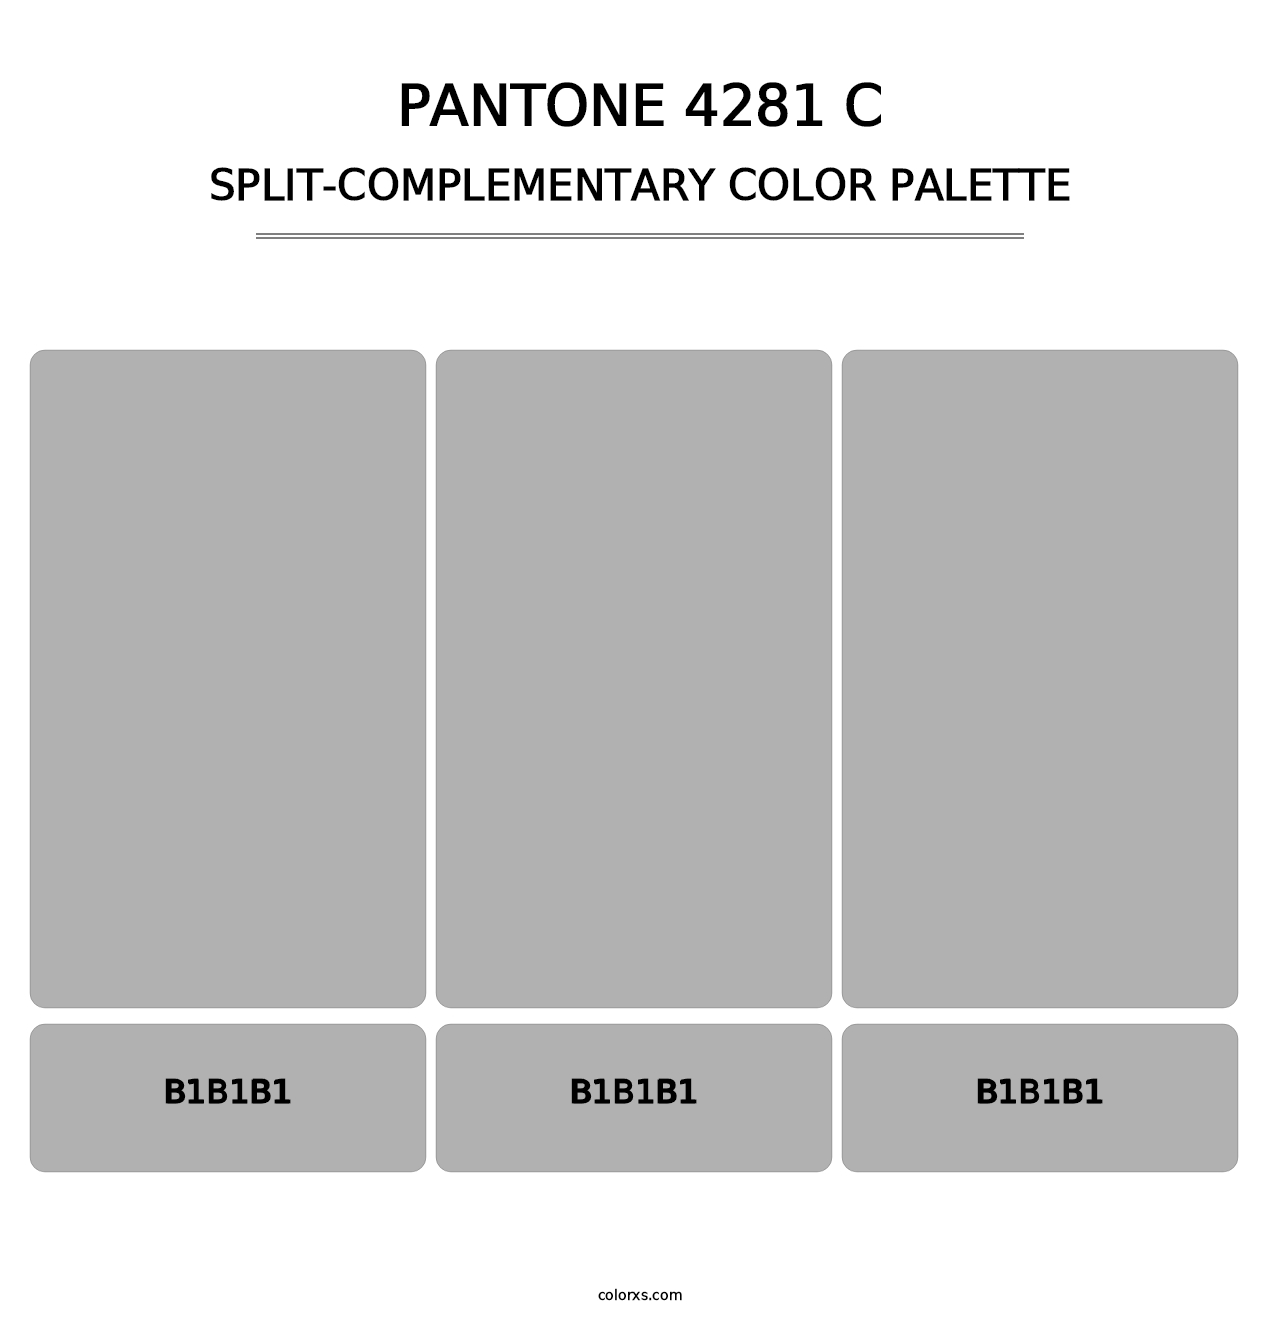 PANTONE 4281 C - Split-Complementary Color Palette